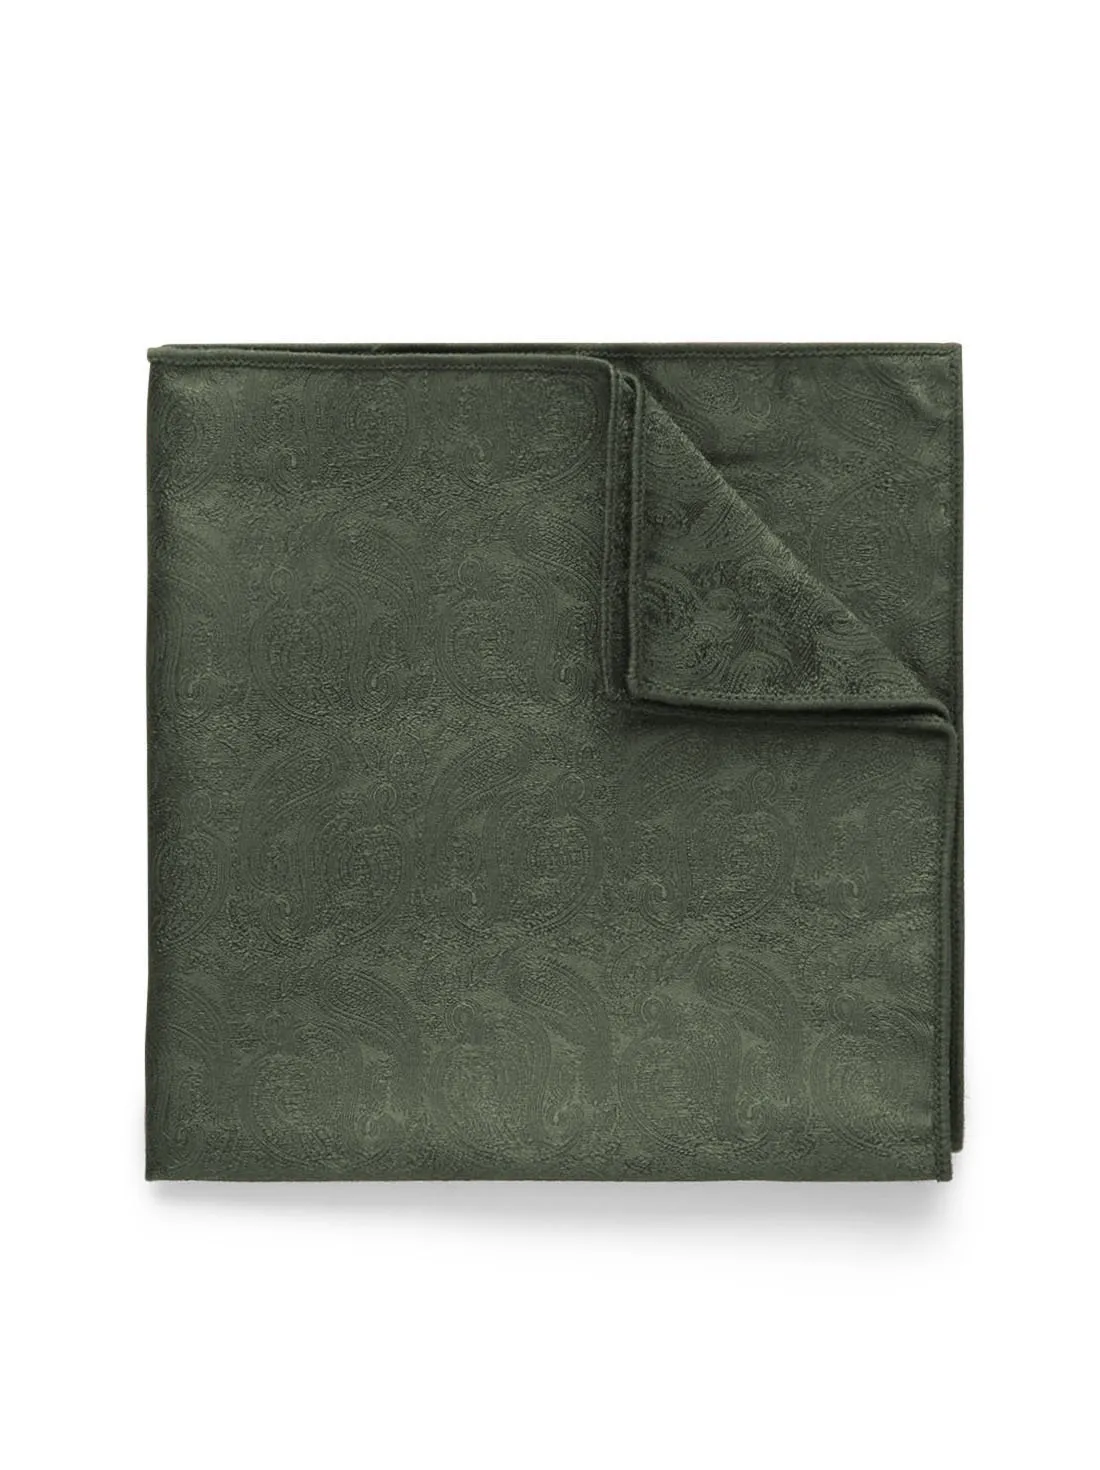 Olive Green Pocket Square Formal